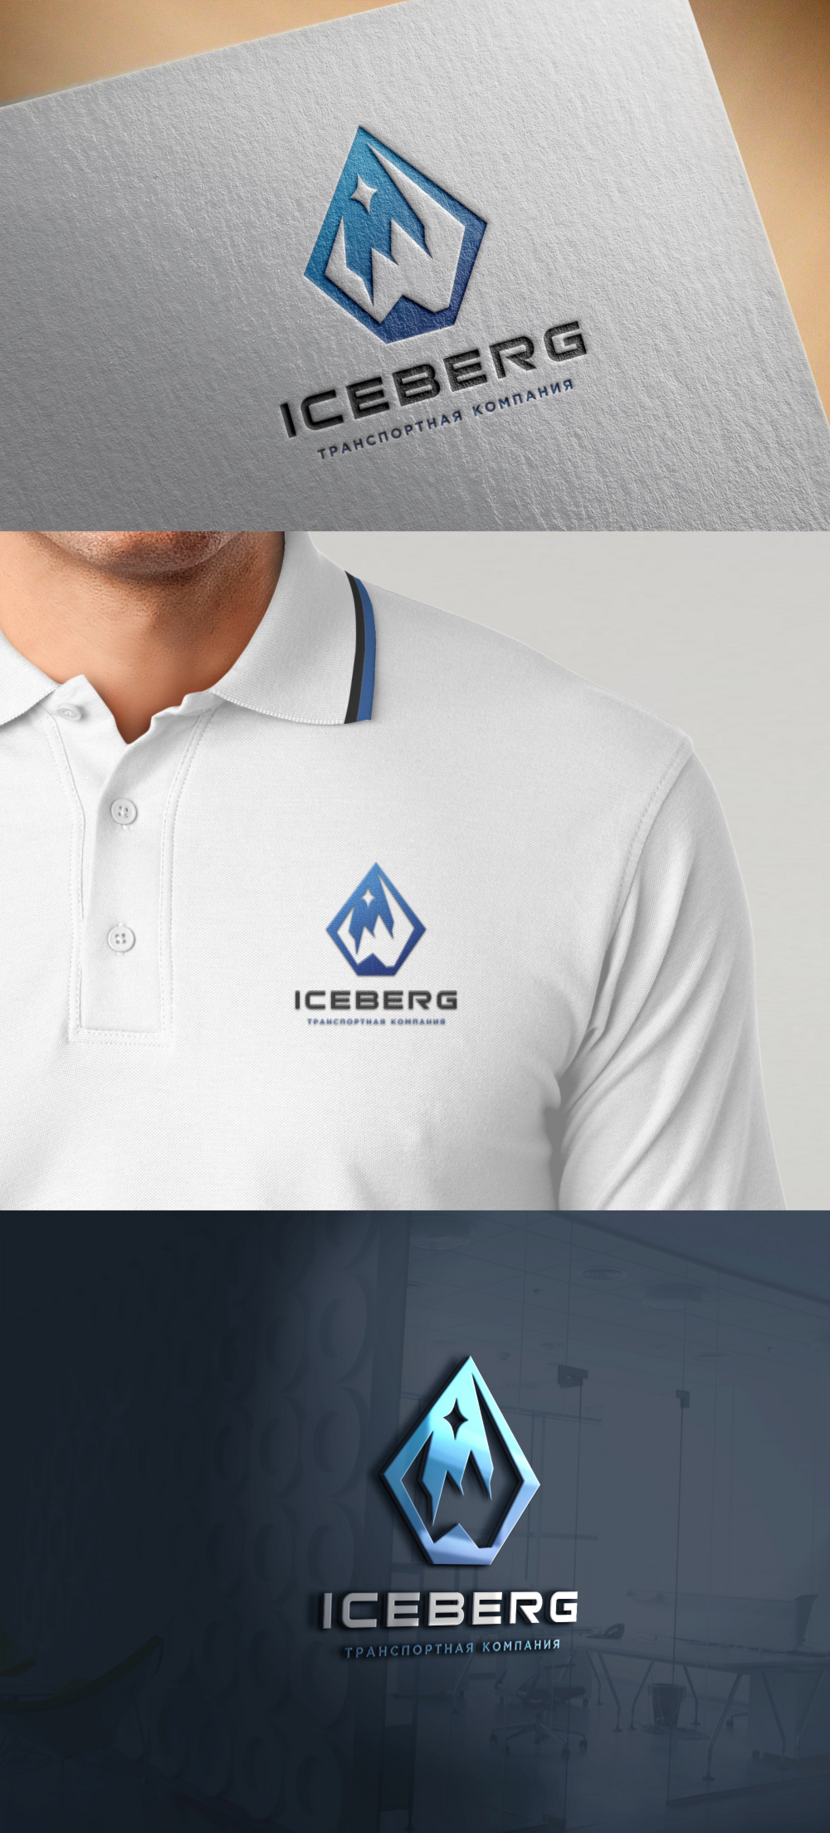   - Разработка логотипа для транспортной компании ICEBERG